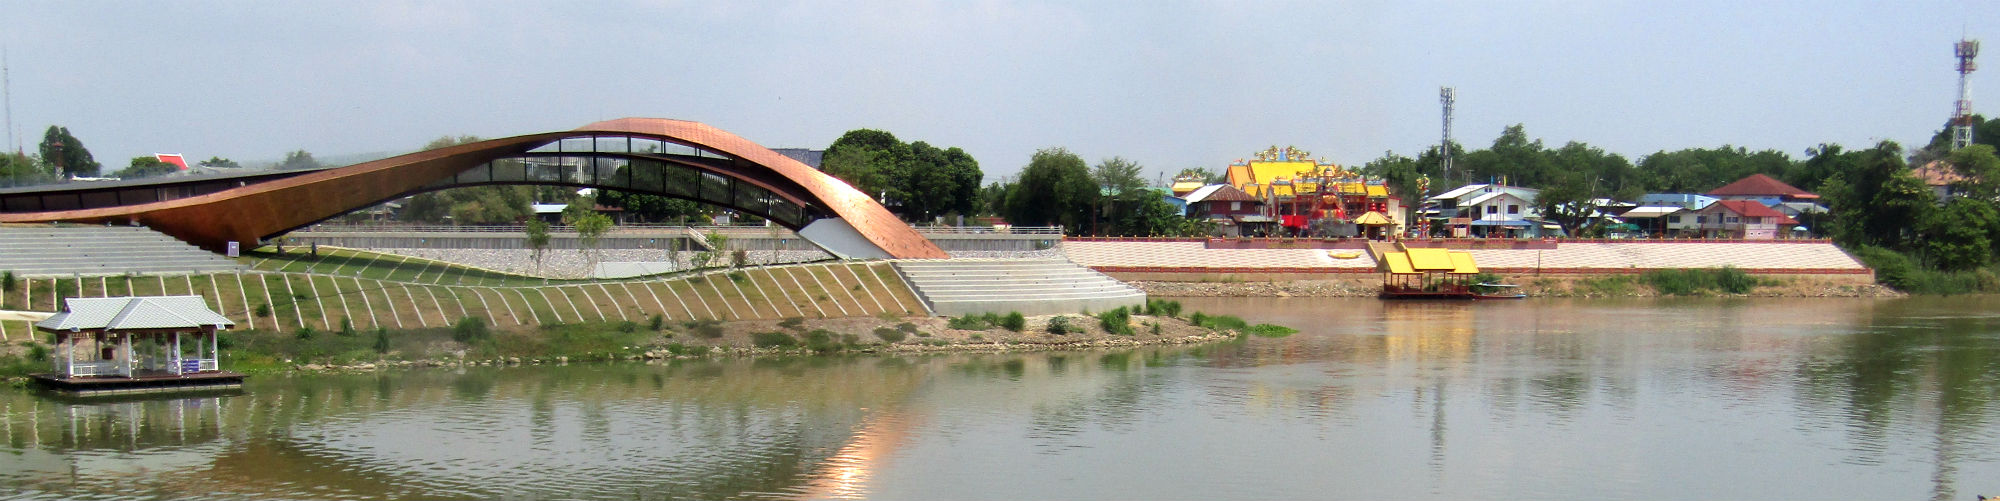 Source off the Chao Phraya River, Nakhon Sawan